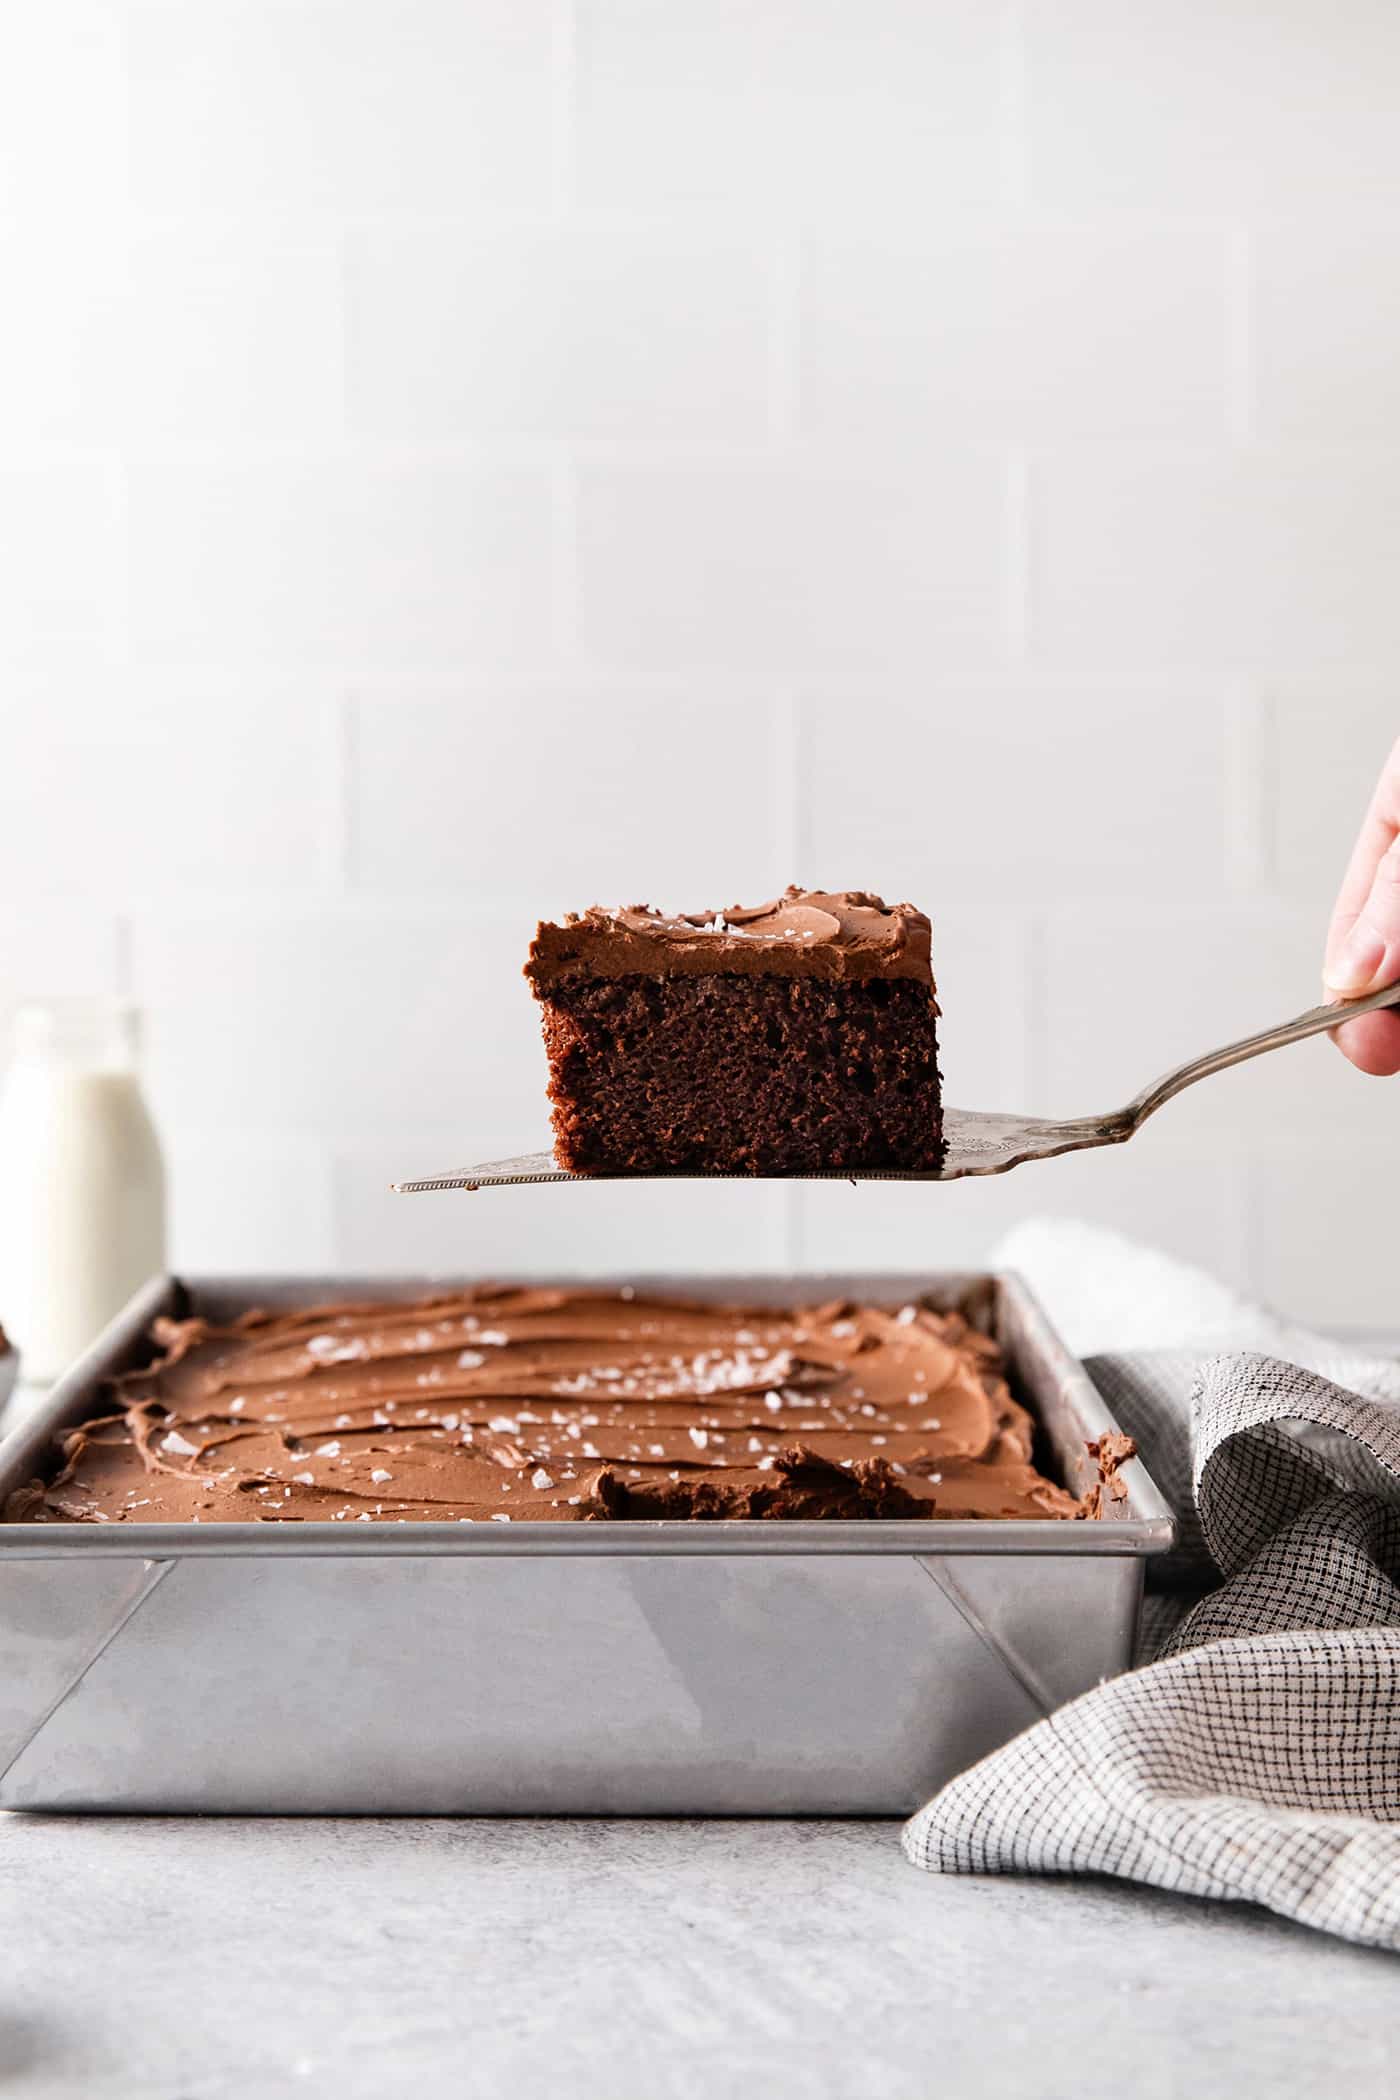 A spatula serving a slice of chocolate wacky cake